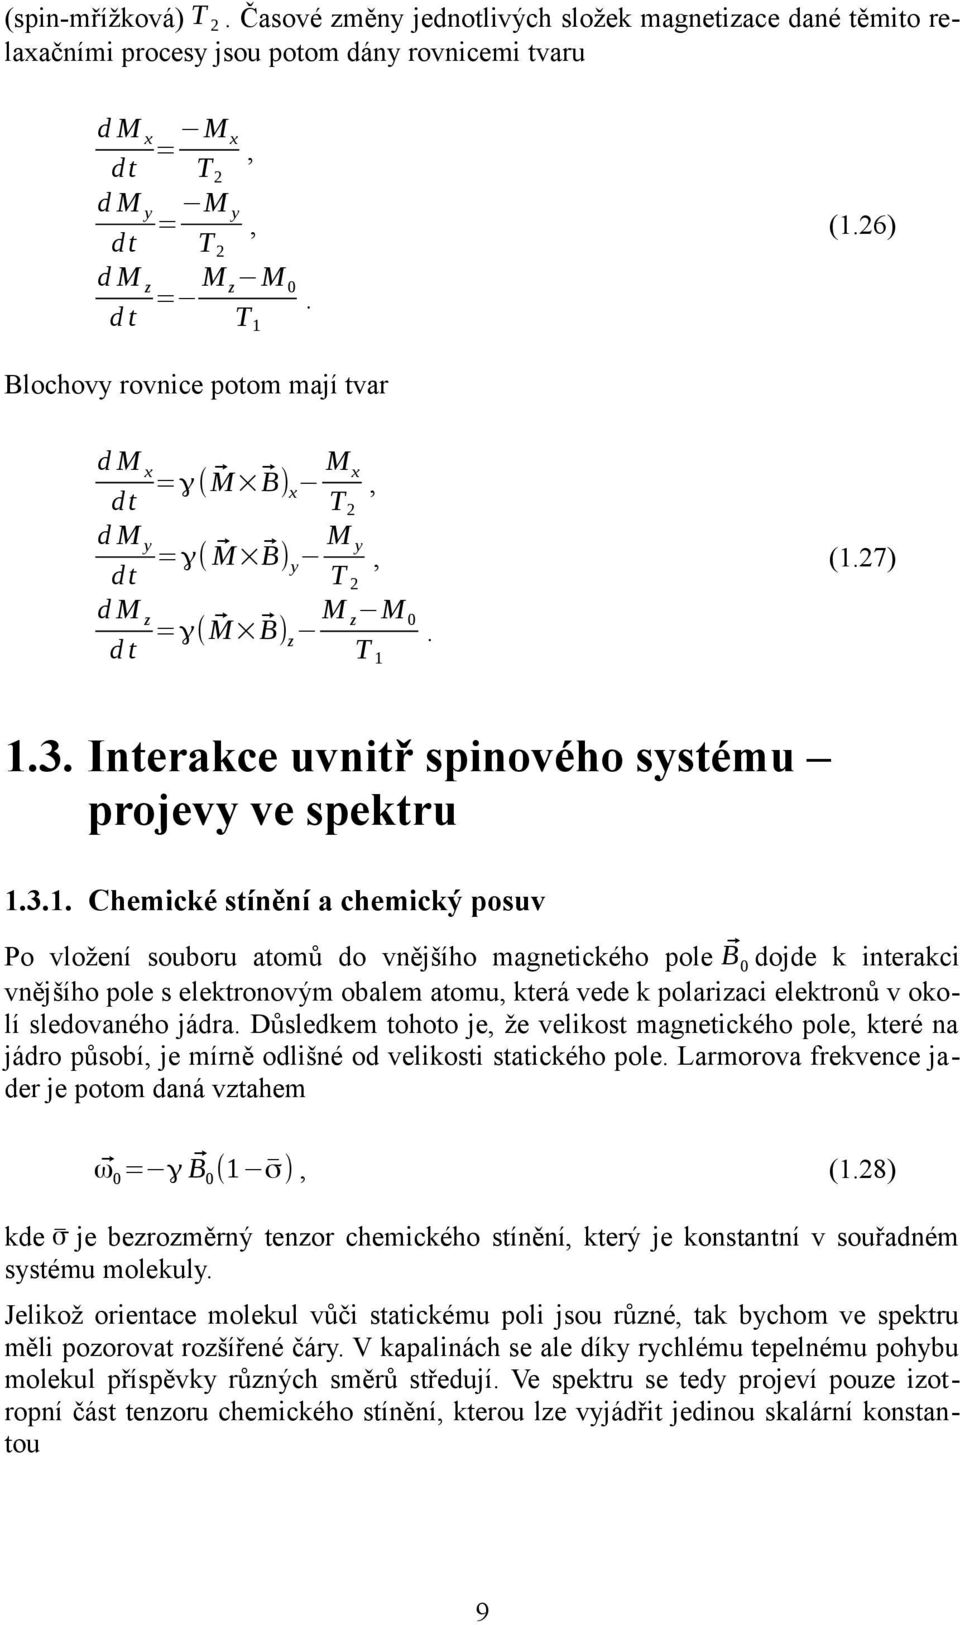 Interakce uvnitř spinového systému projevy ve spektru.3.